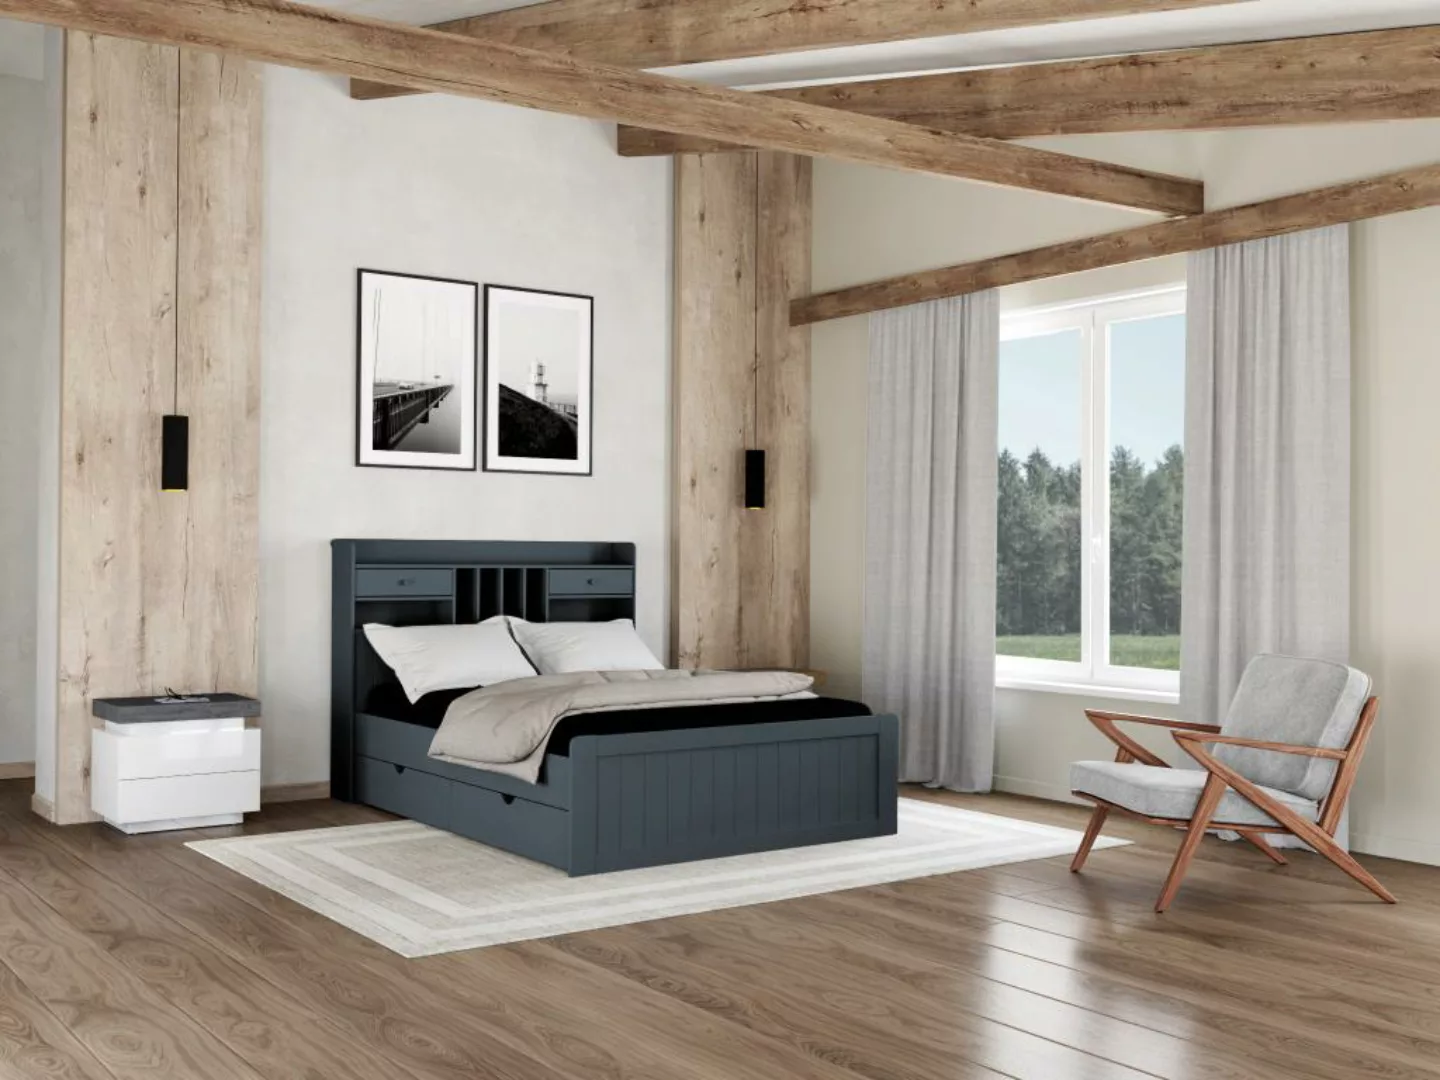 Bett mit Stauraum & Schubladen + Lattenrost - 140 x 190 cm - Kiefer - Grau günstig online kaufen